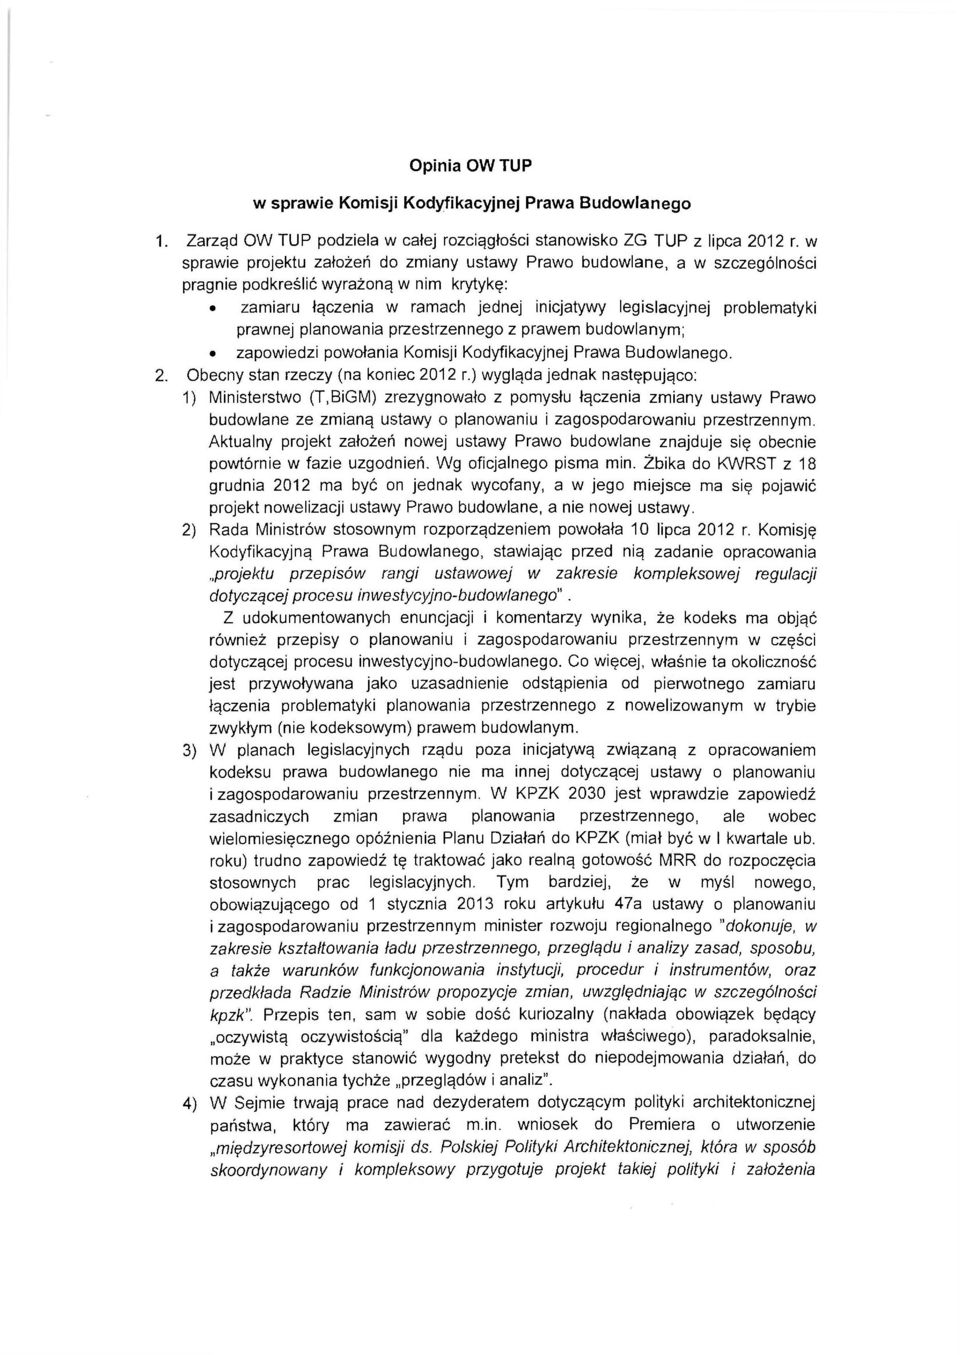 prawnej planowania przestrzennego z prawem budowlanym; zapowiedzi powołania Komisji Kodyfikacyjnej Prawa Budowlanego. 2. Obecny stan rzeczy (na koniec 2012 r.